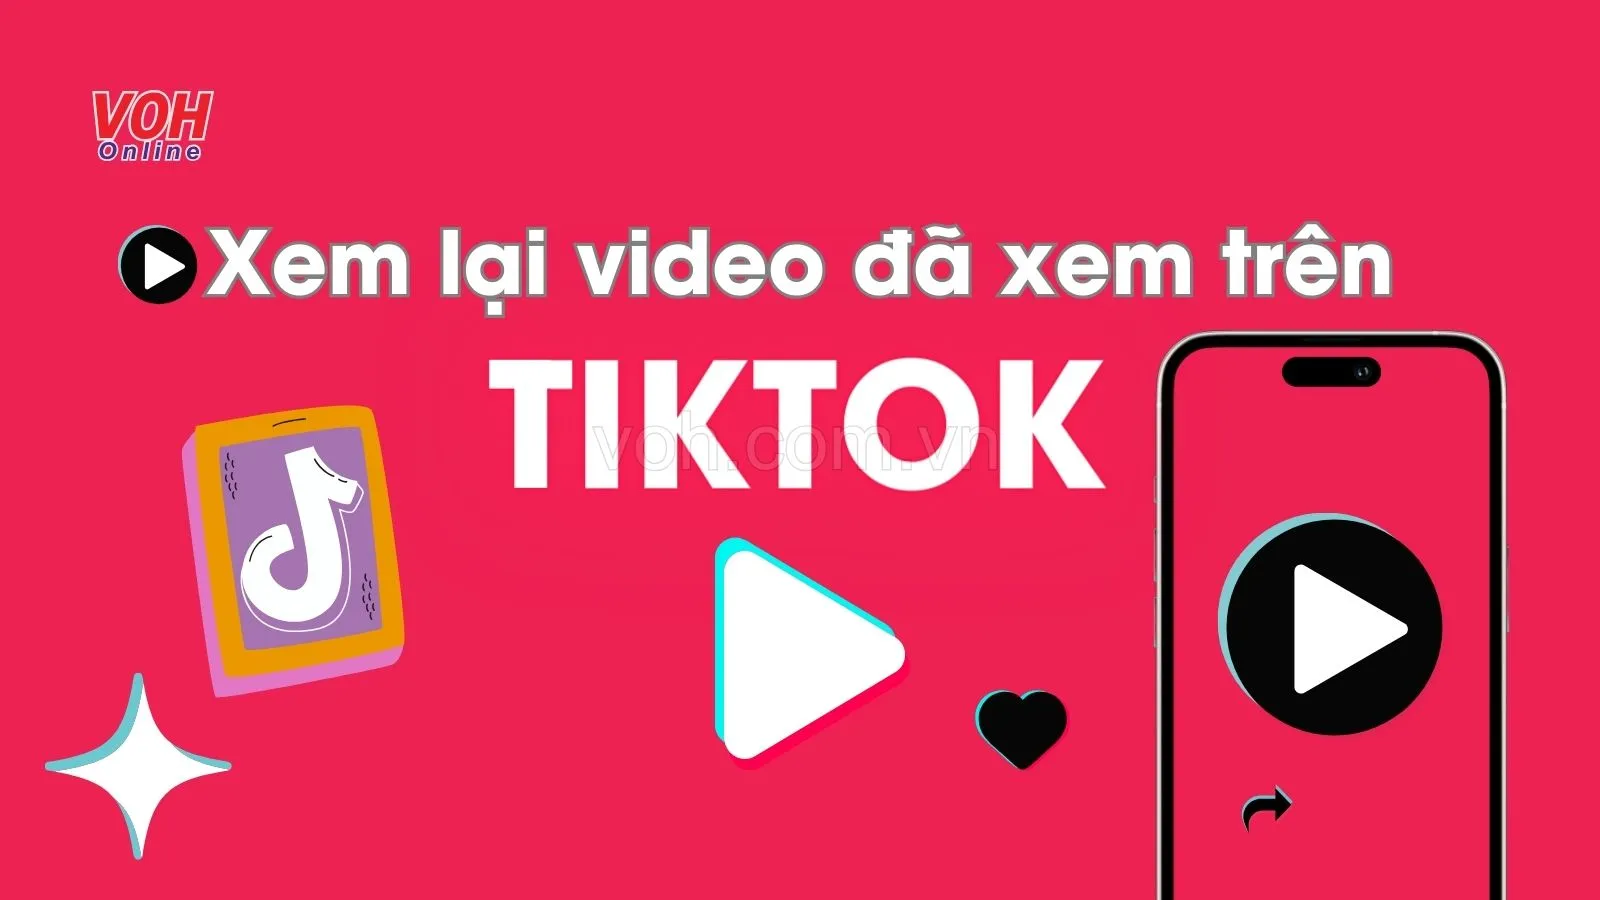 Hướng dẫn cách xem lại video đã xem trên TikTok chi tiết nhất